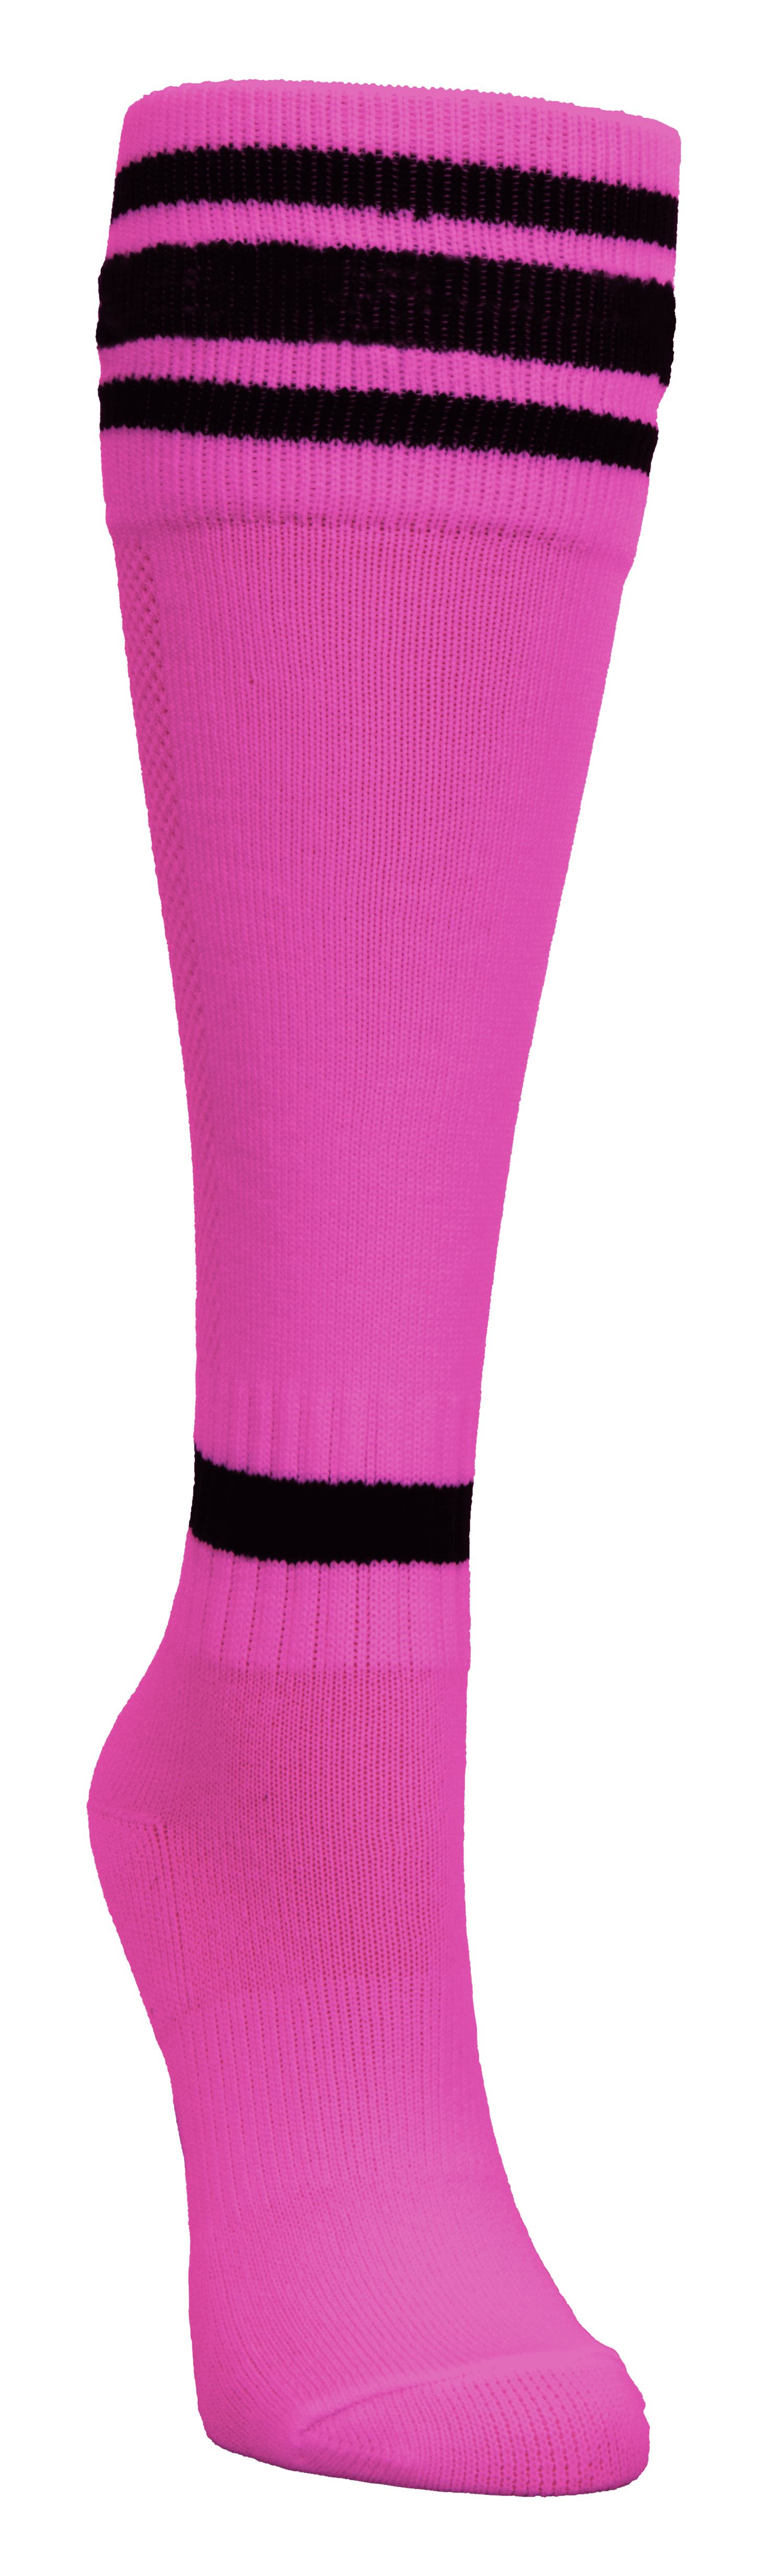 Mitre Soccer Socks, Neon Pink, Junior - Walmart.com